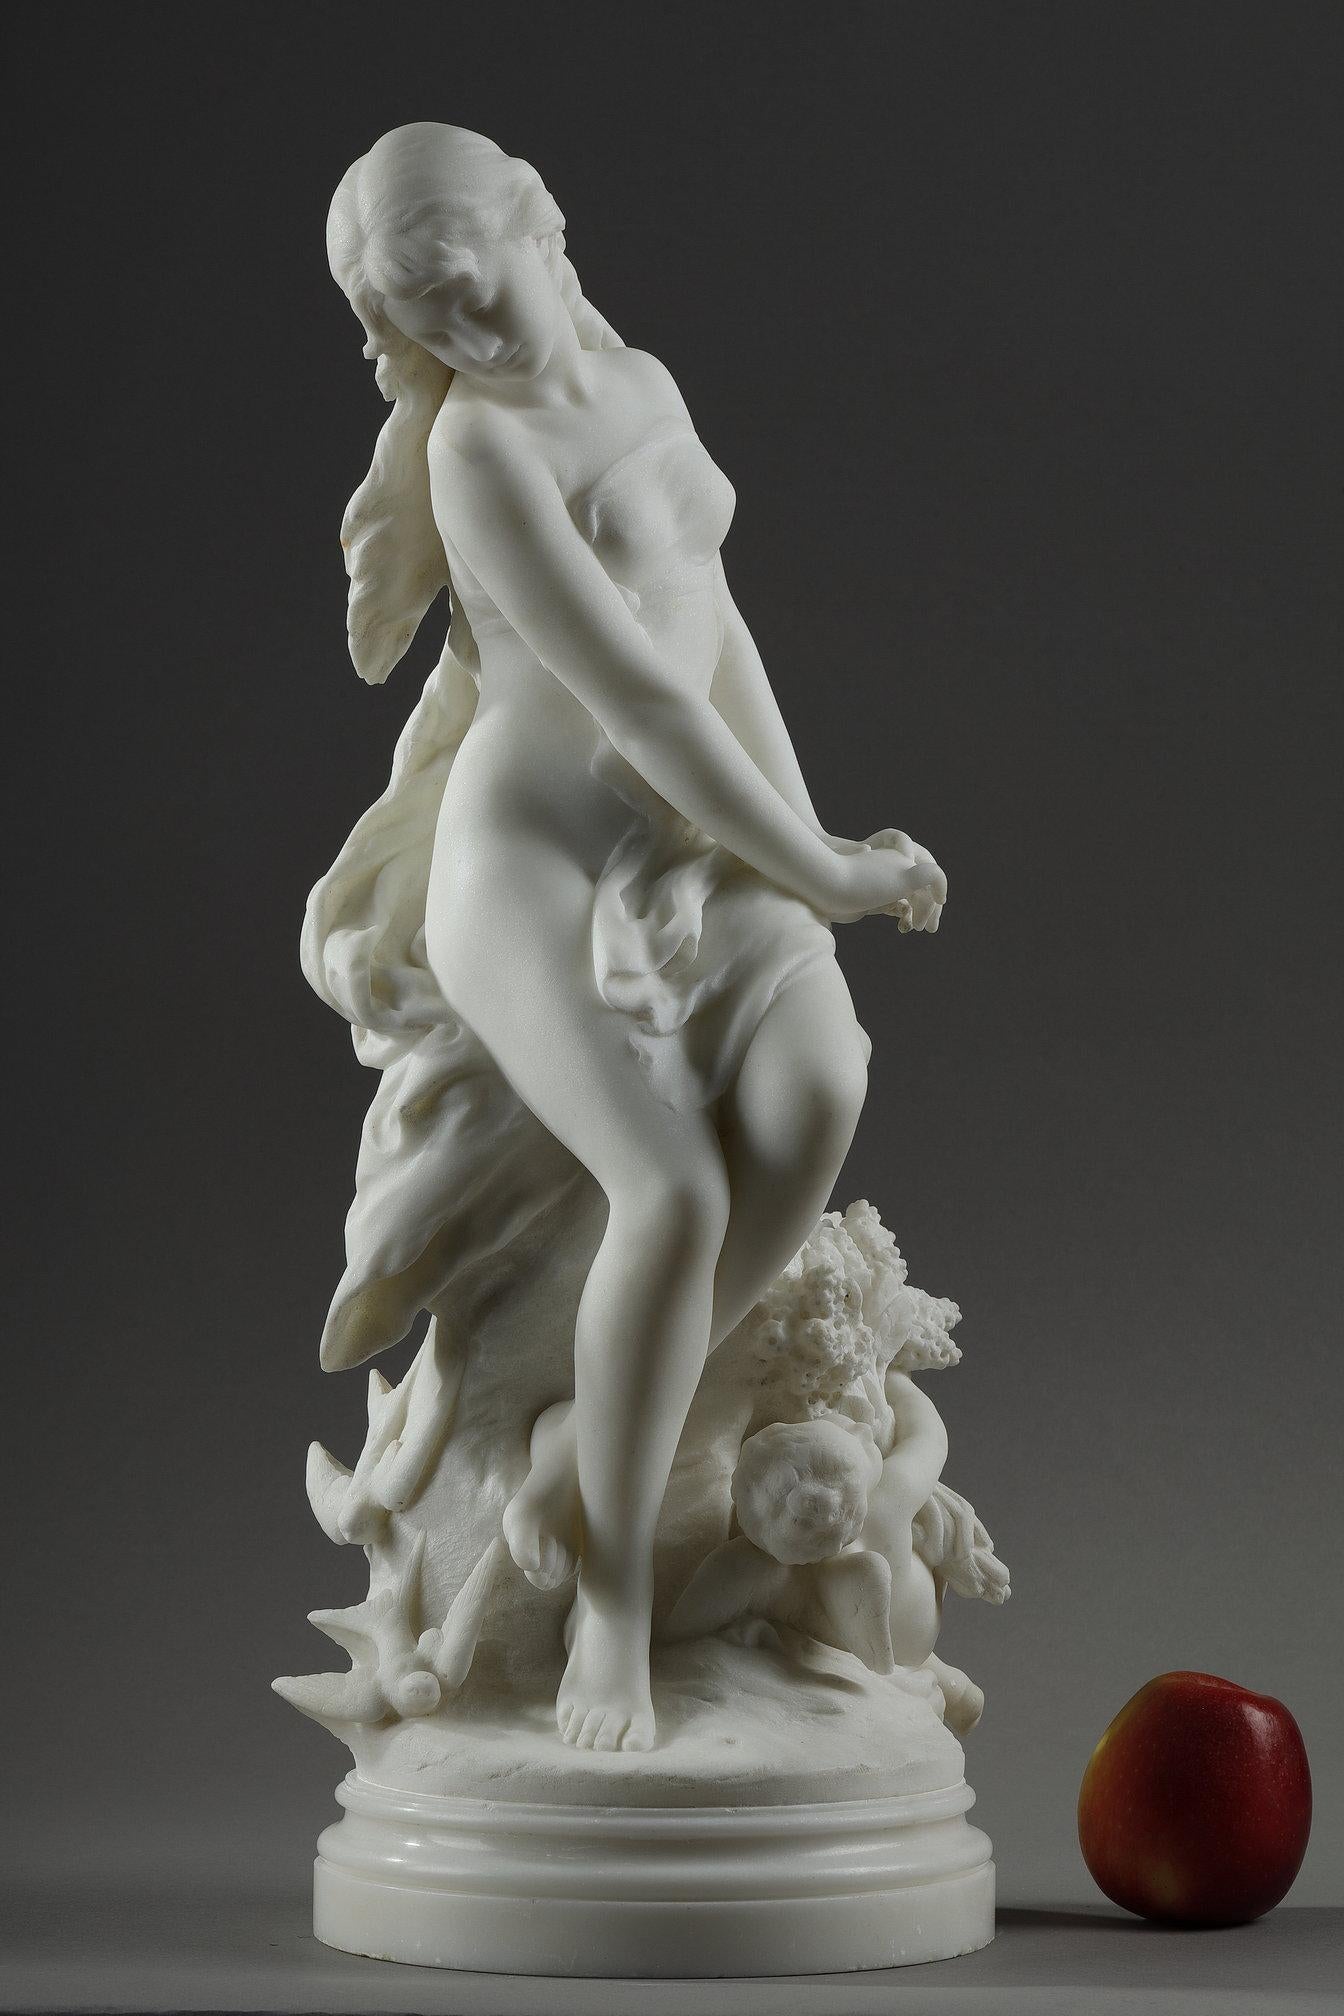 Élégante sculpture en marbre de Carrare représentant Vénus (Aphrodite) portant un voile léger, assise sur un rocher avec Cupidon (Eros) à ses pieds, portant un grand bouquet de fleurs et entourée d'hirondelles. Ce groupe en marbre est une allégorie